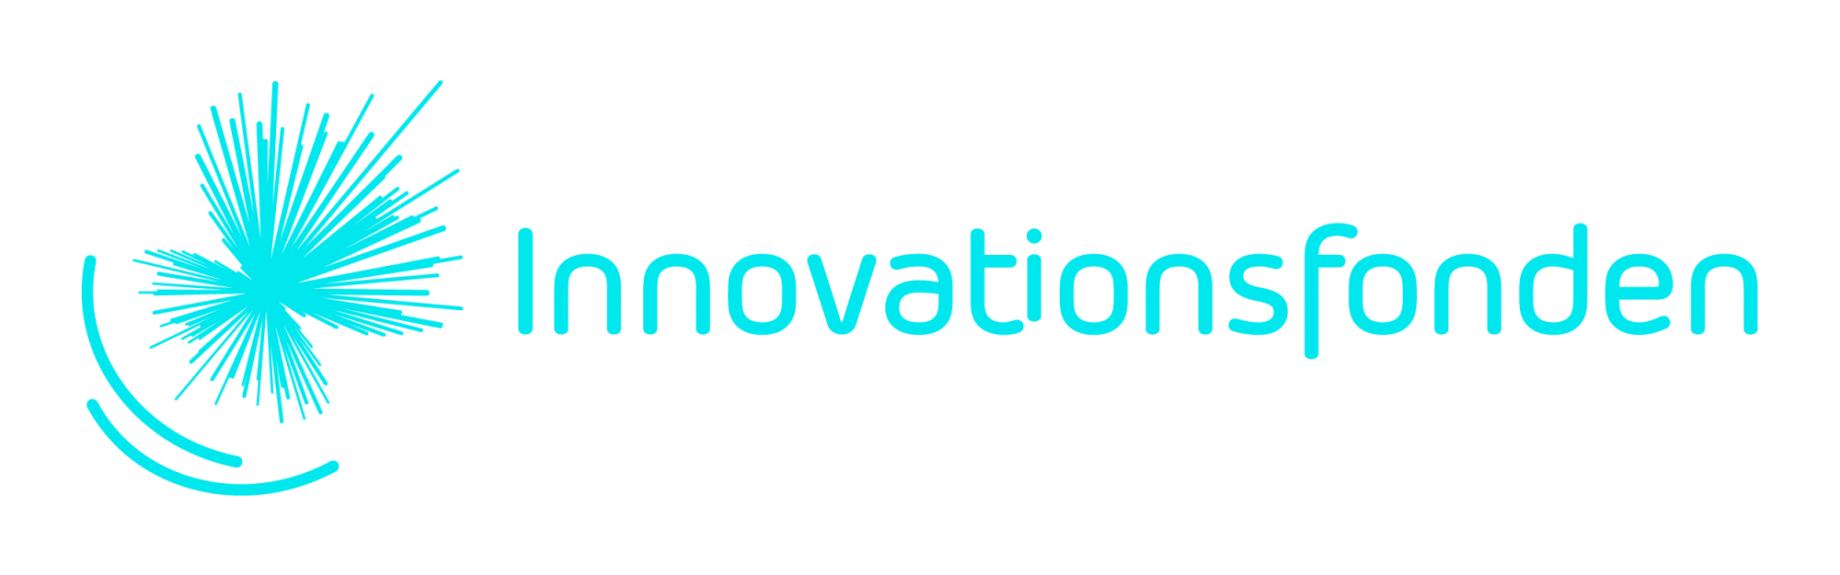 Logo for Innovationsfonden